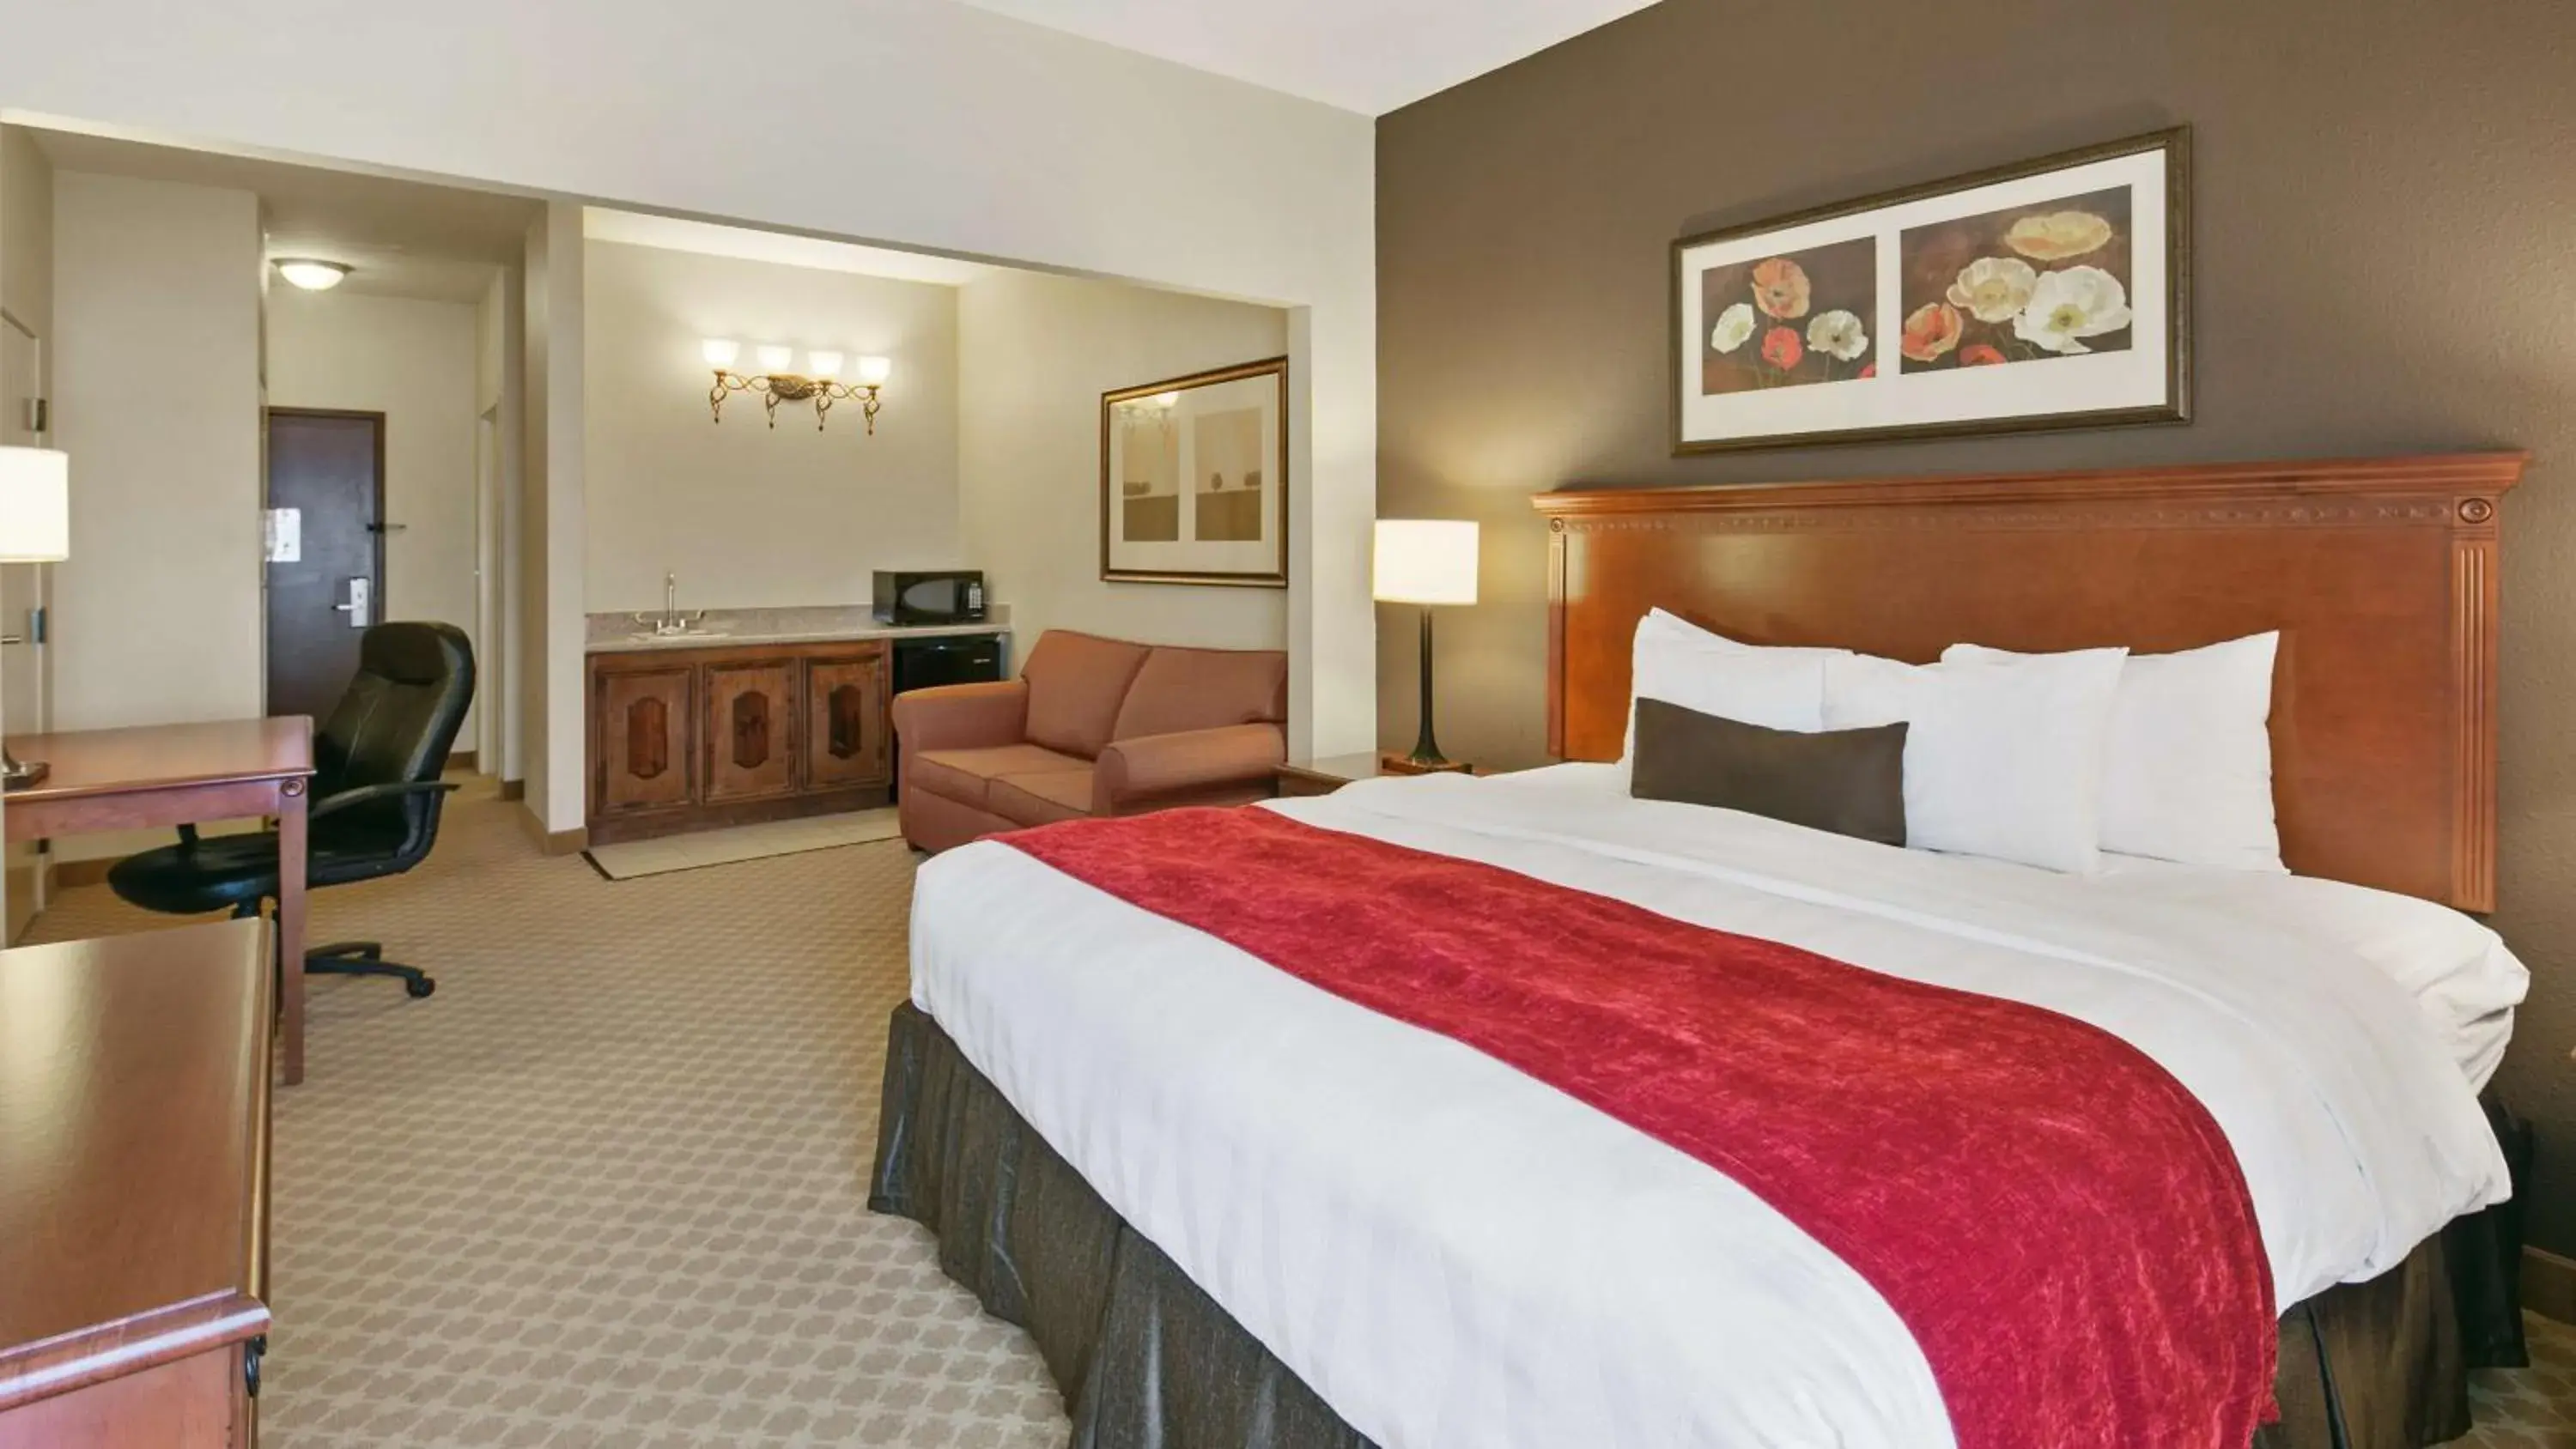 TV and multimedia, Bed in Best Western Plus Georgetown Inn & Suites